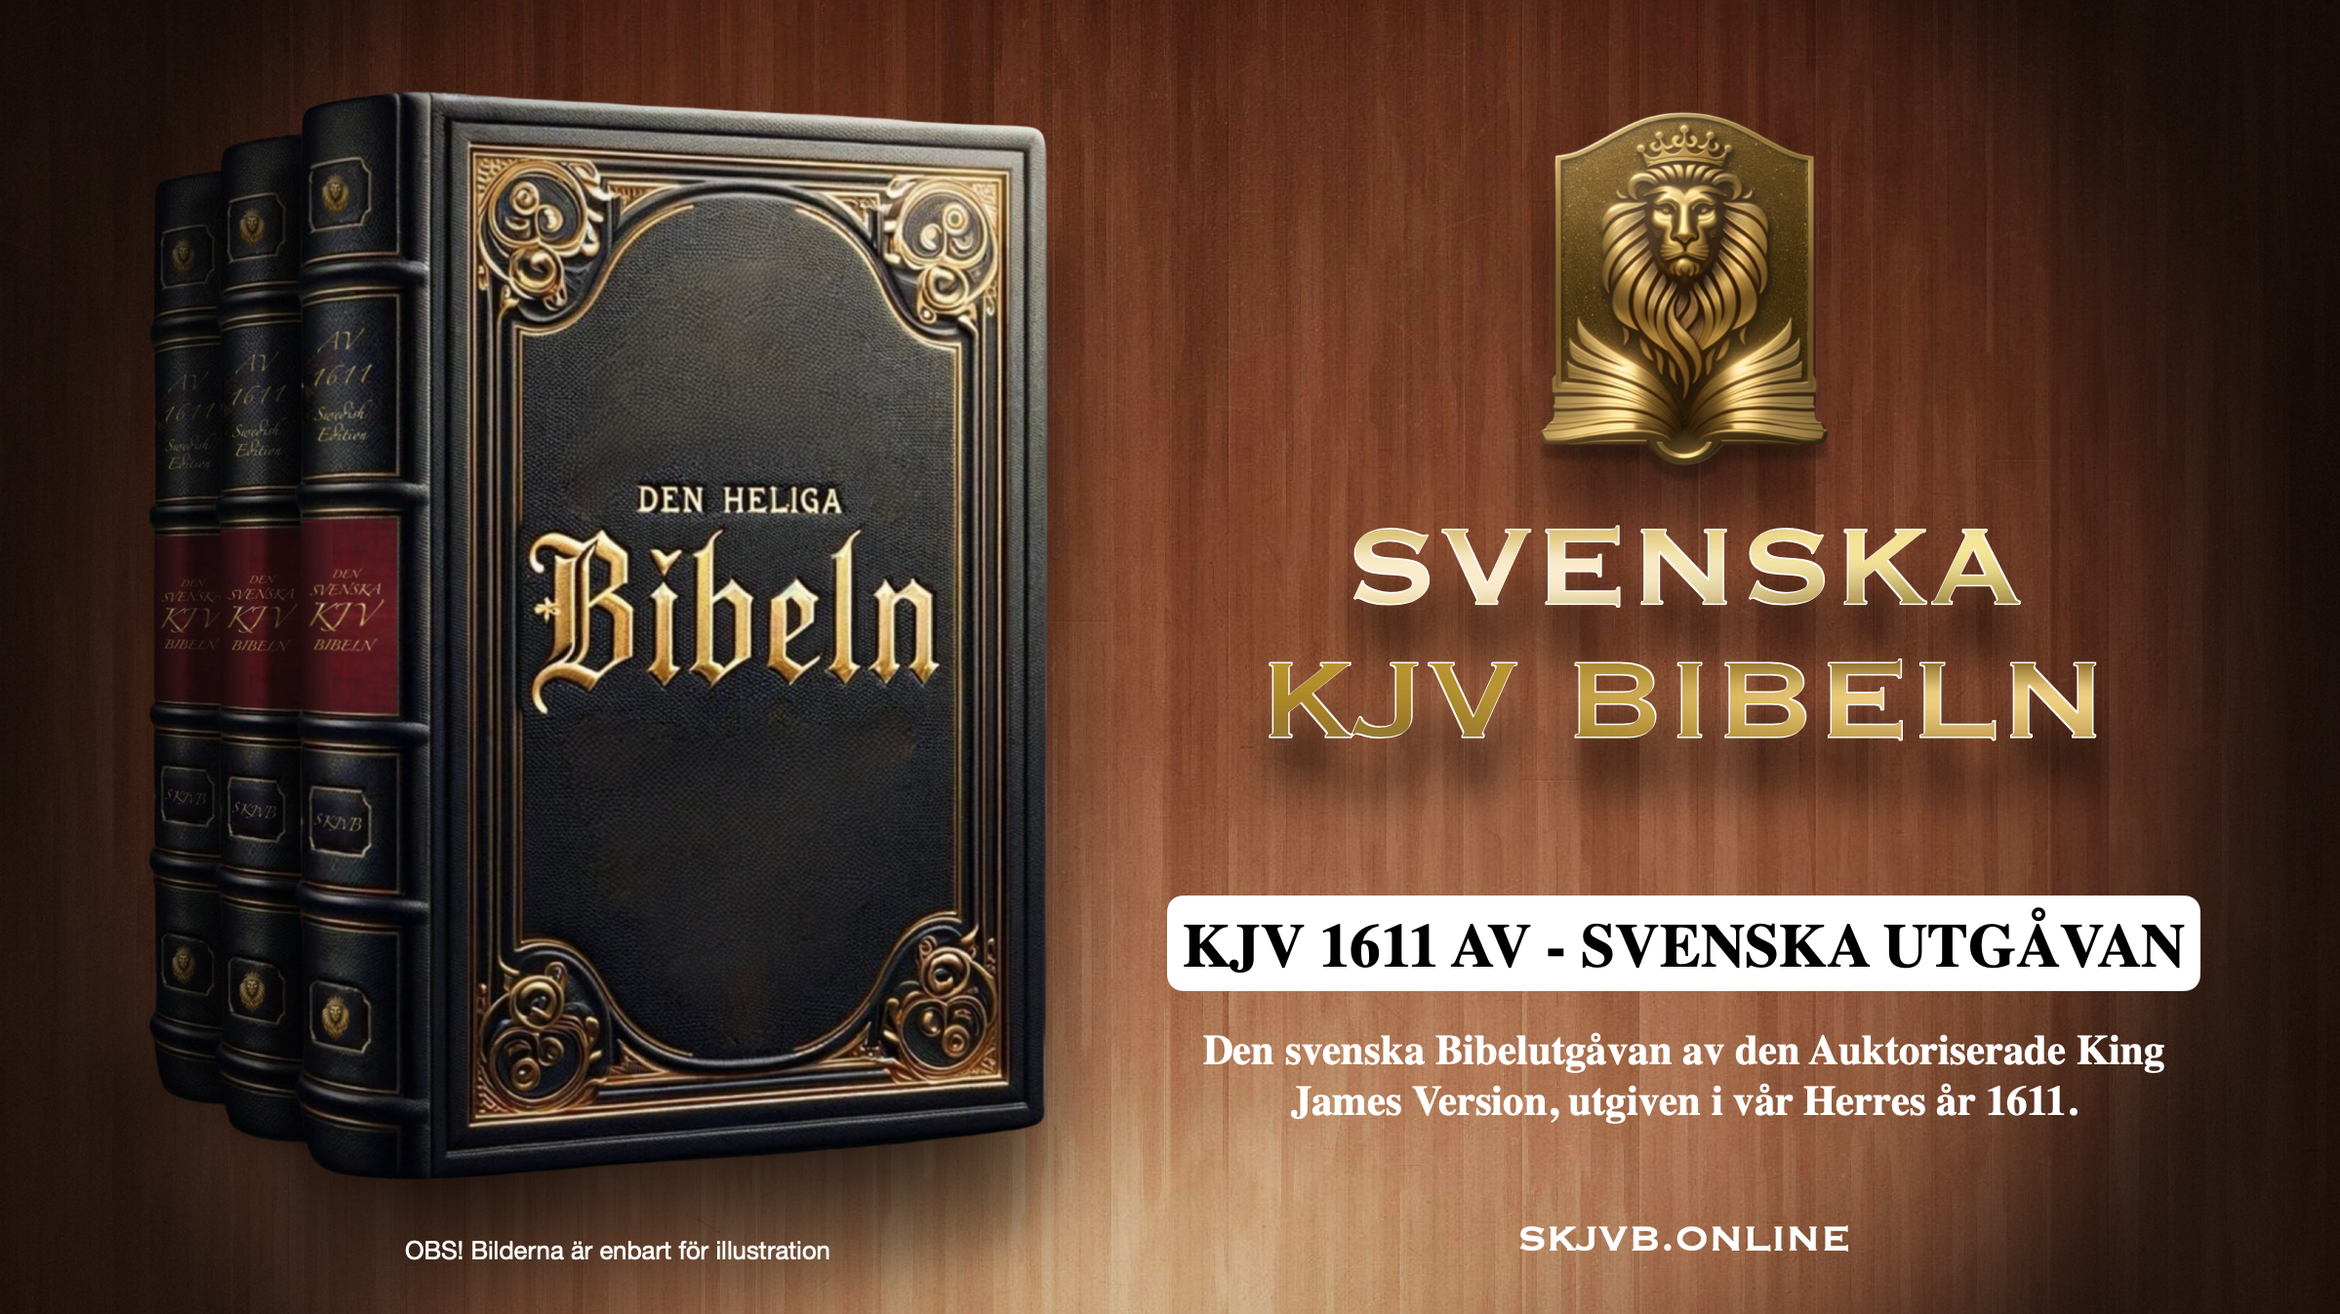 Svenska KJV Bibeln